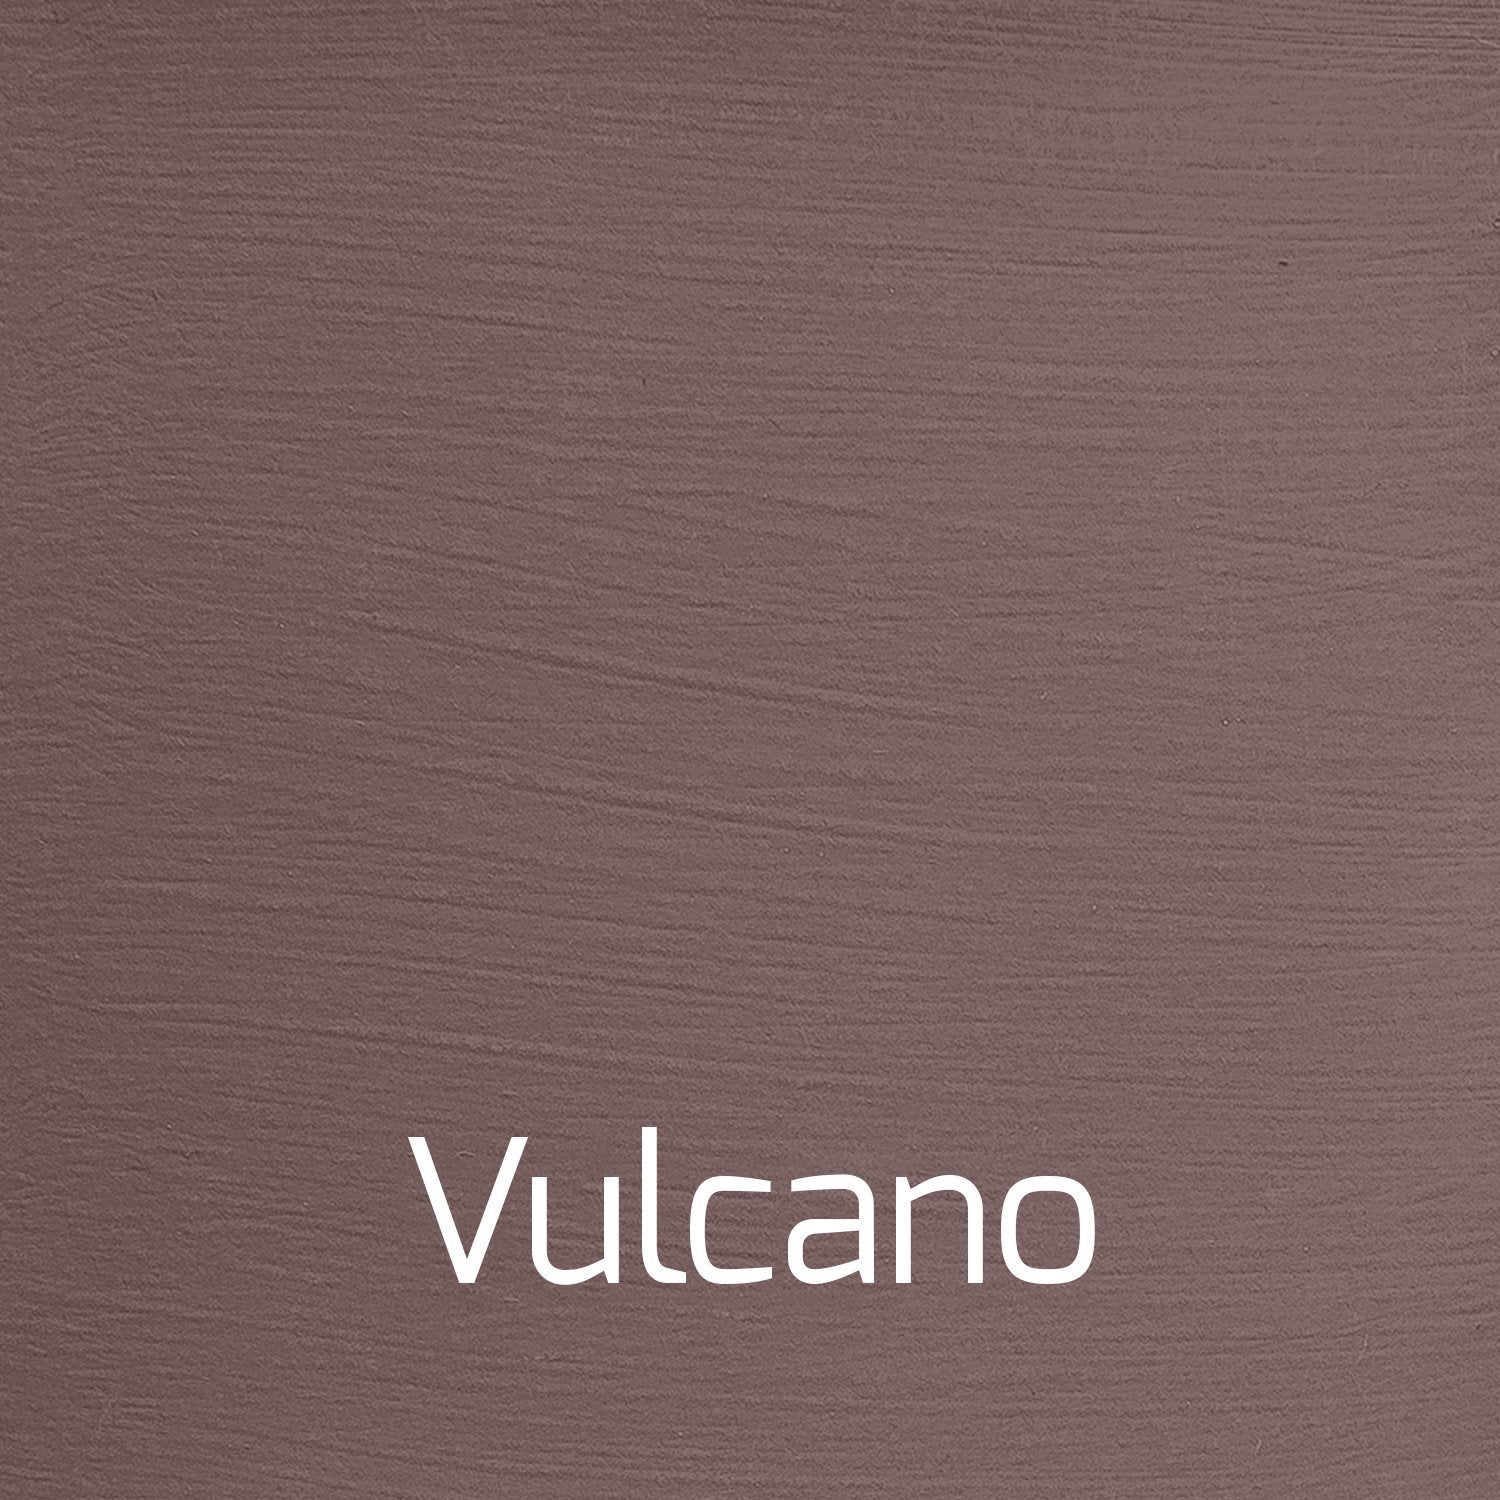 Vulcano - Vintage-Vintage-Autentico Paint Online